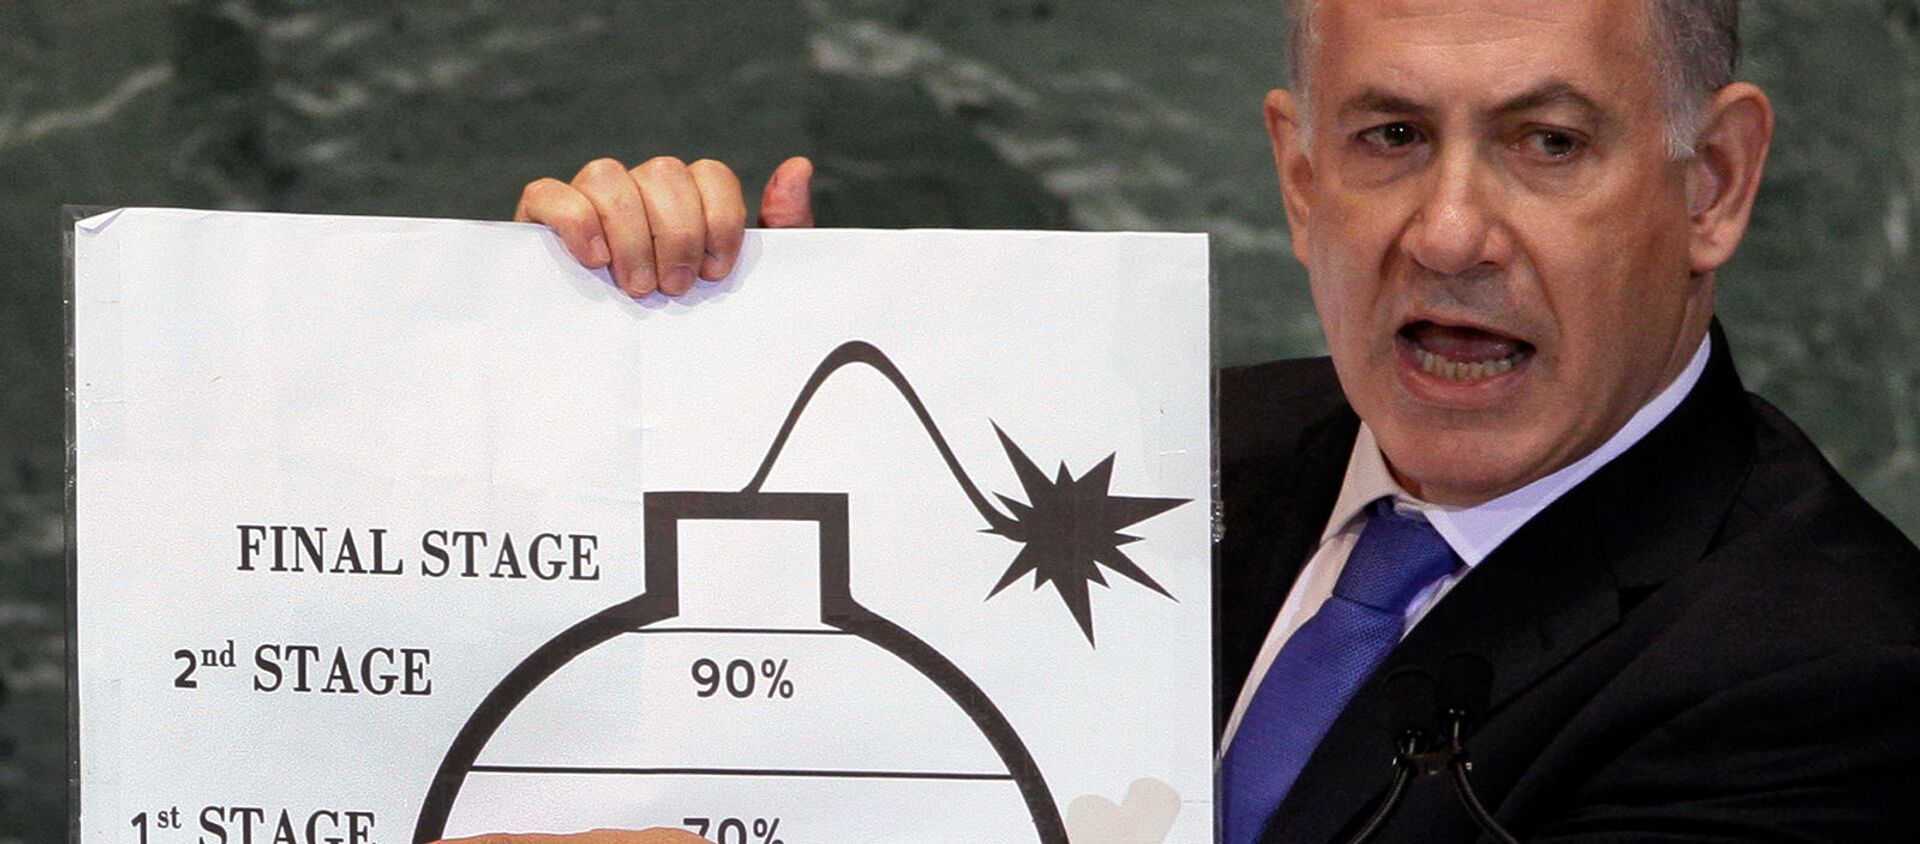 Премьер-министр Израиля Биньямин Нетаньяху демонстрирует свою озабоченность ядерными амбициями Ирана в своем выступлении на 67-й сессии Генеральной Ассамблеи ООН (27 сентября 2012). Нью-Йорк - Sputnik Армения, 1920, 08.04.2021